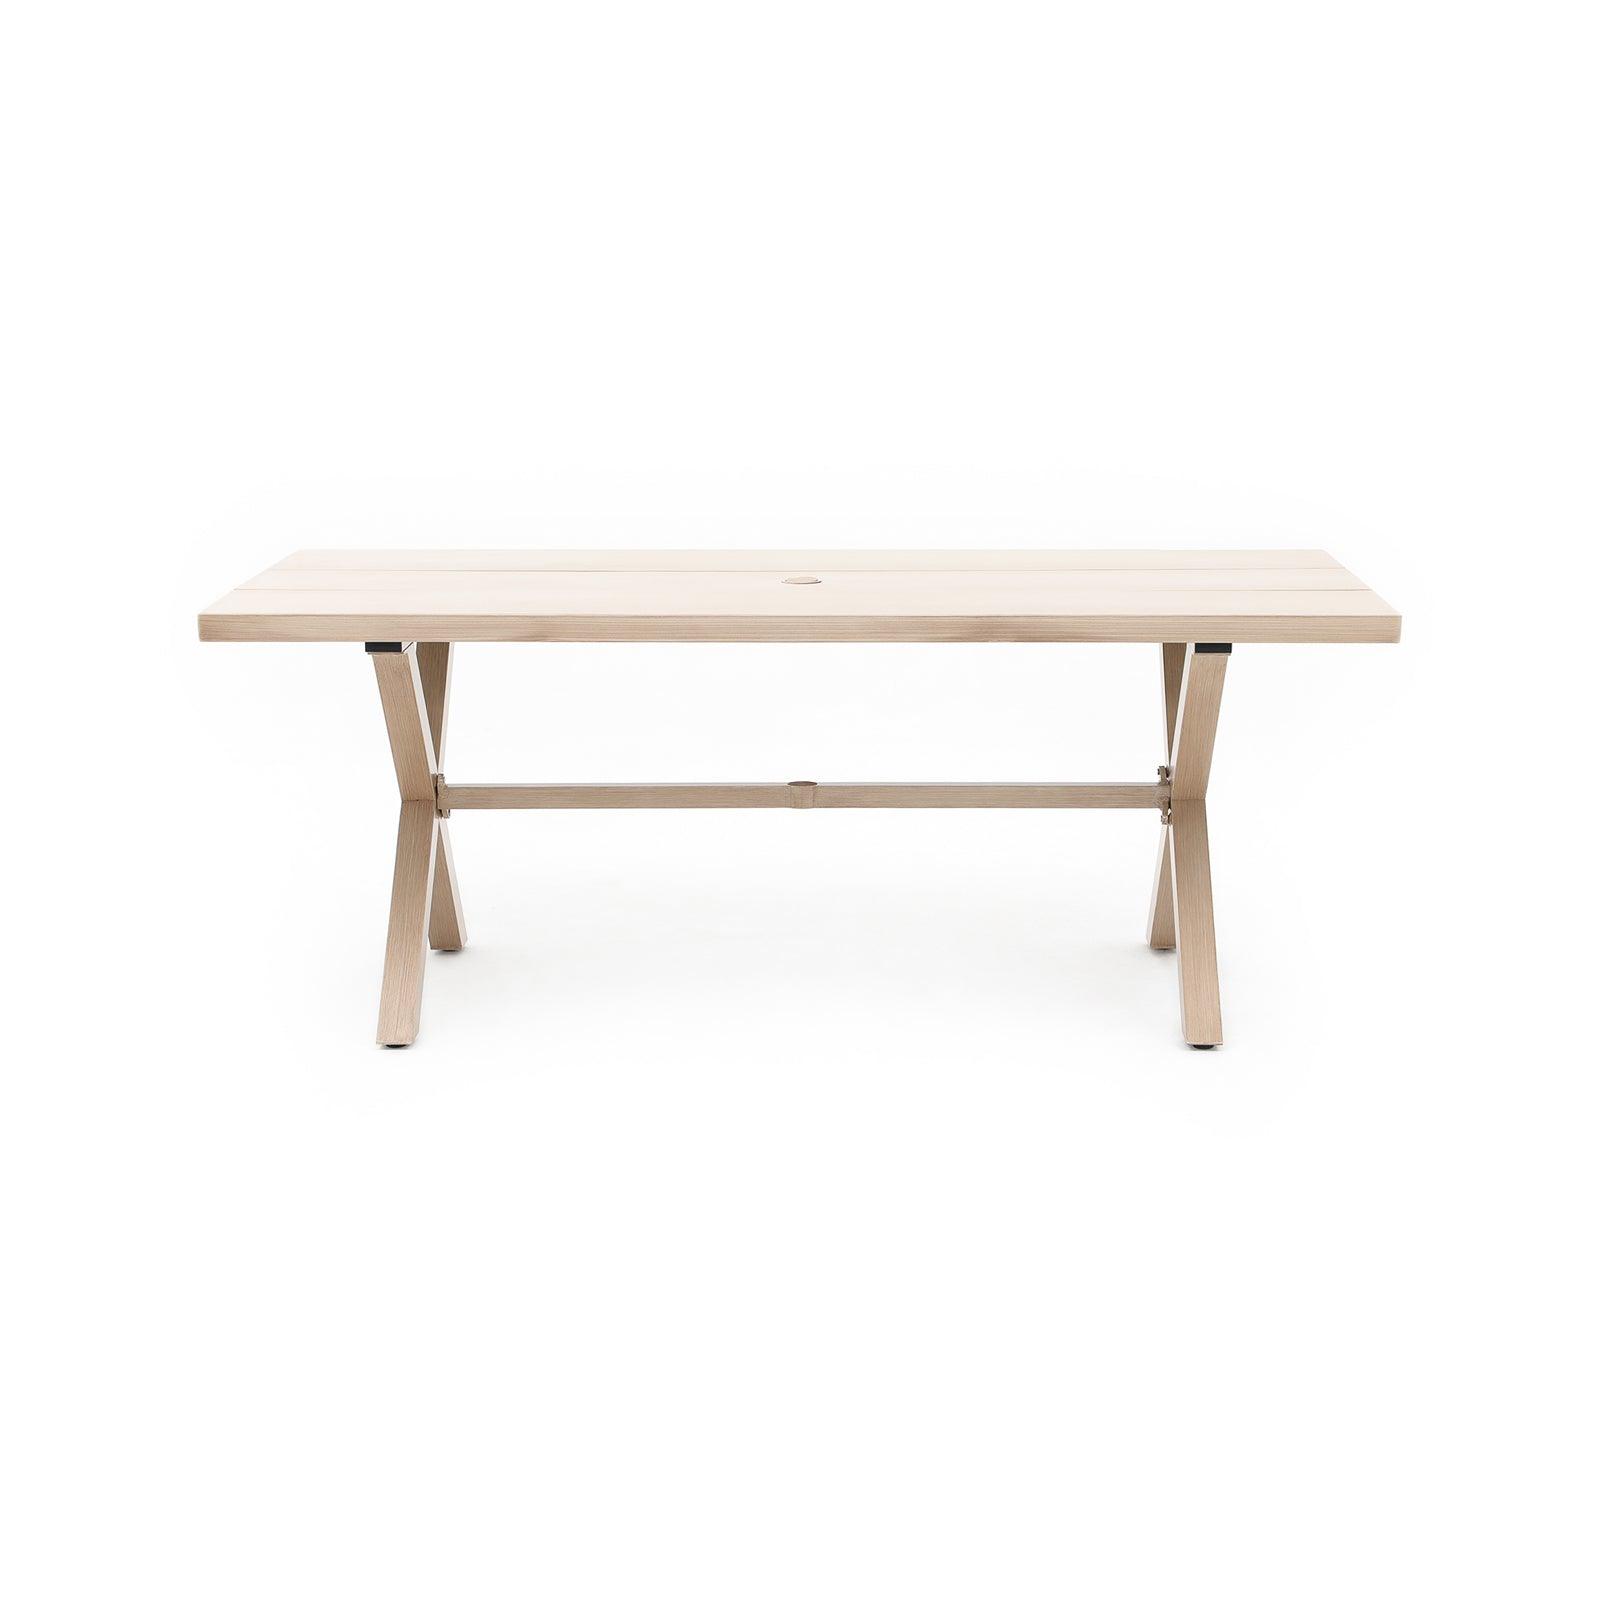 Salina Natural Aluminum Rectangular Dining Table for 8 with Umbrella Hole, X-Shaped Leg Design - Jardina Furniture#color_Natural